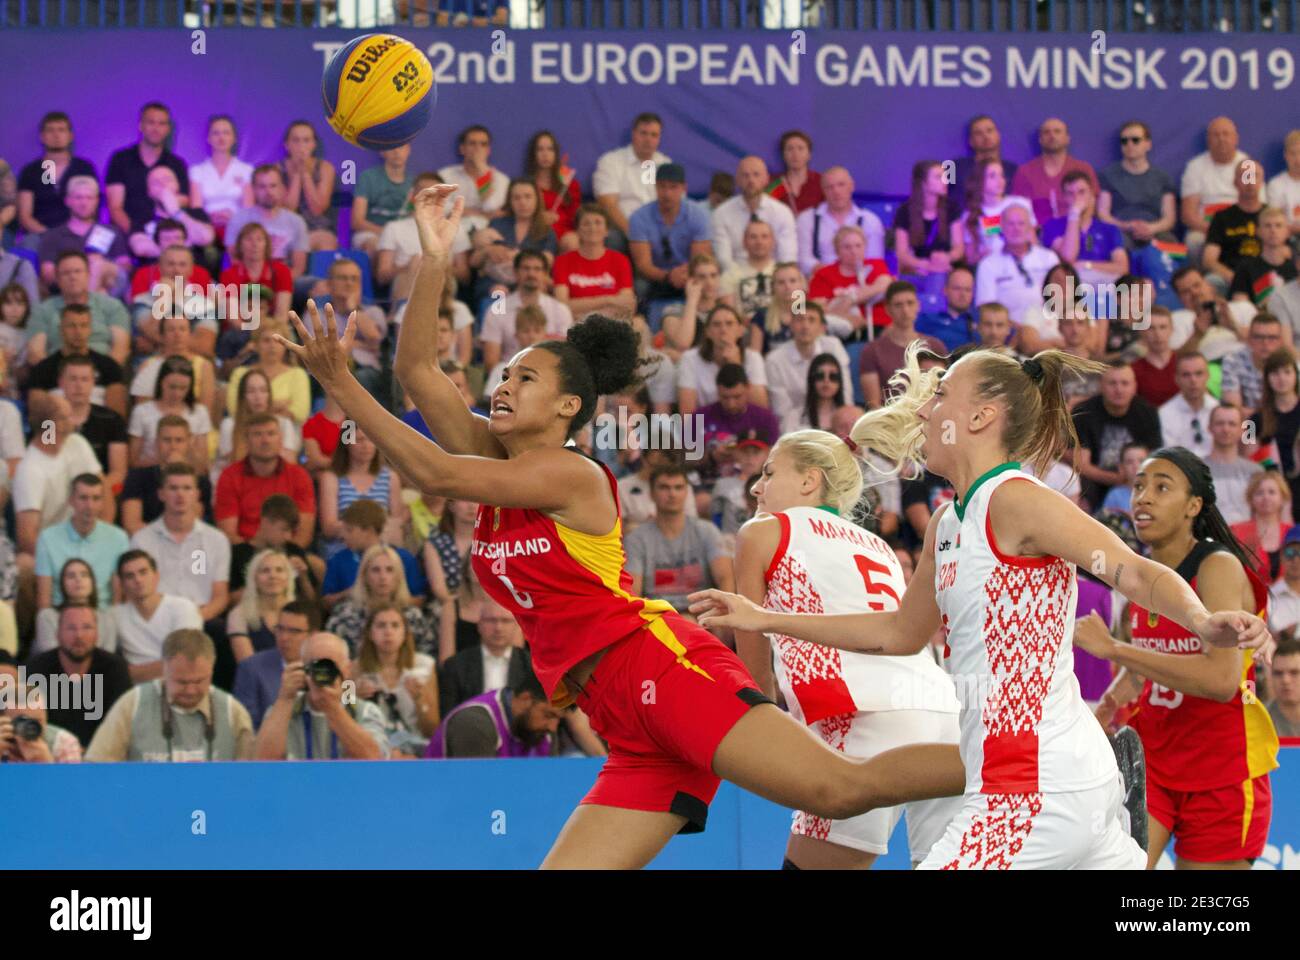 Joueur de basket-ball Satou Sabally (Allemagne) aux Jeux européens de 2019 à Minsk (Bélarus). Banque D'Images